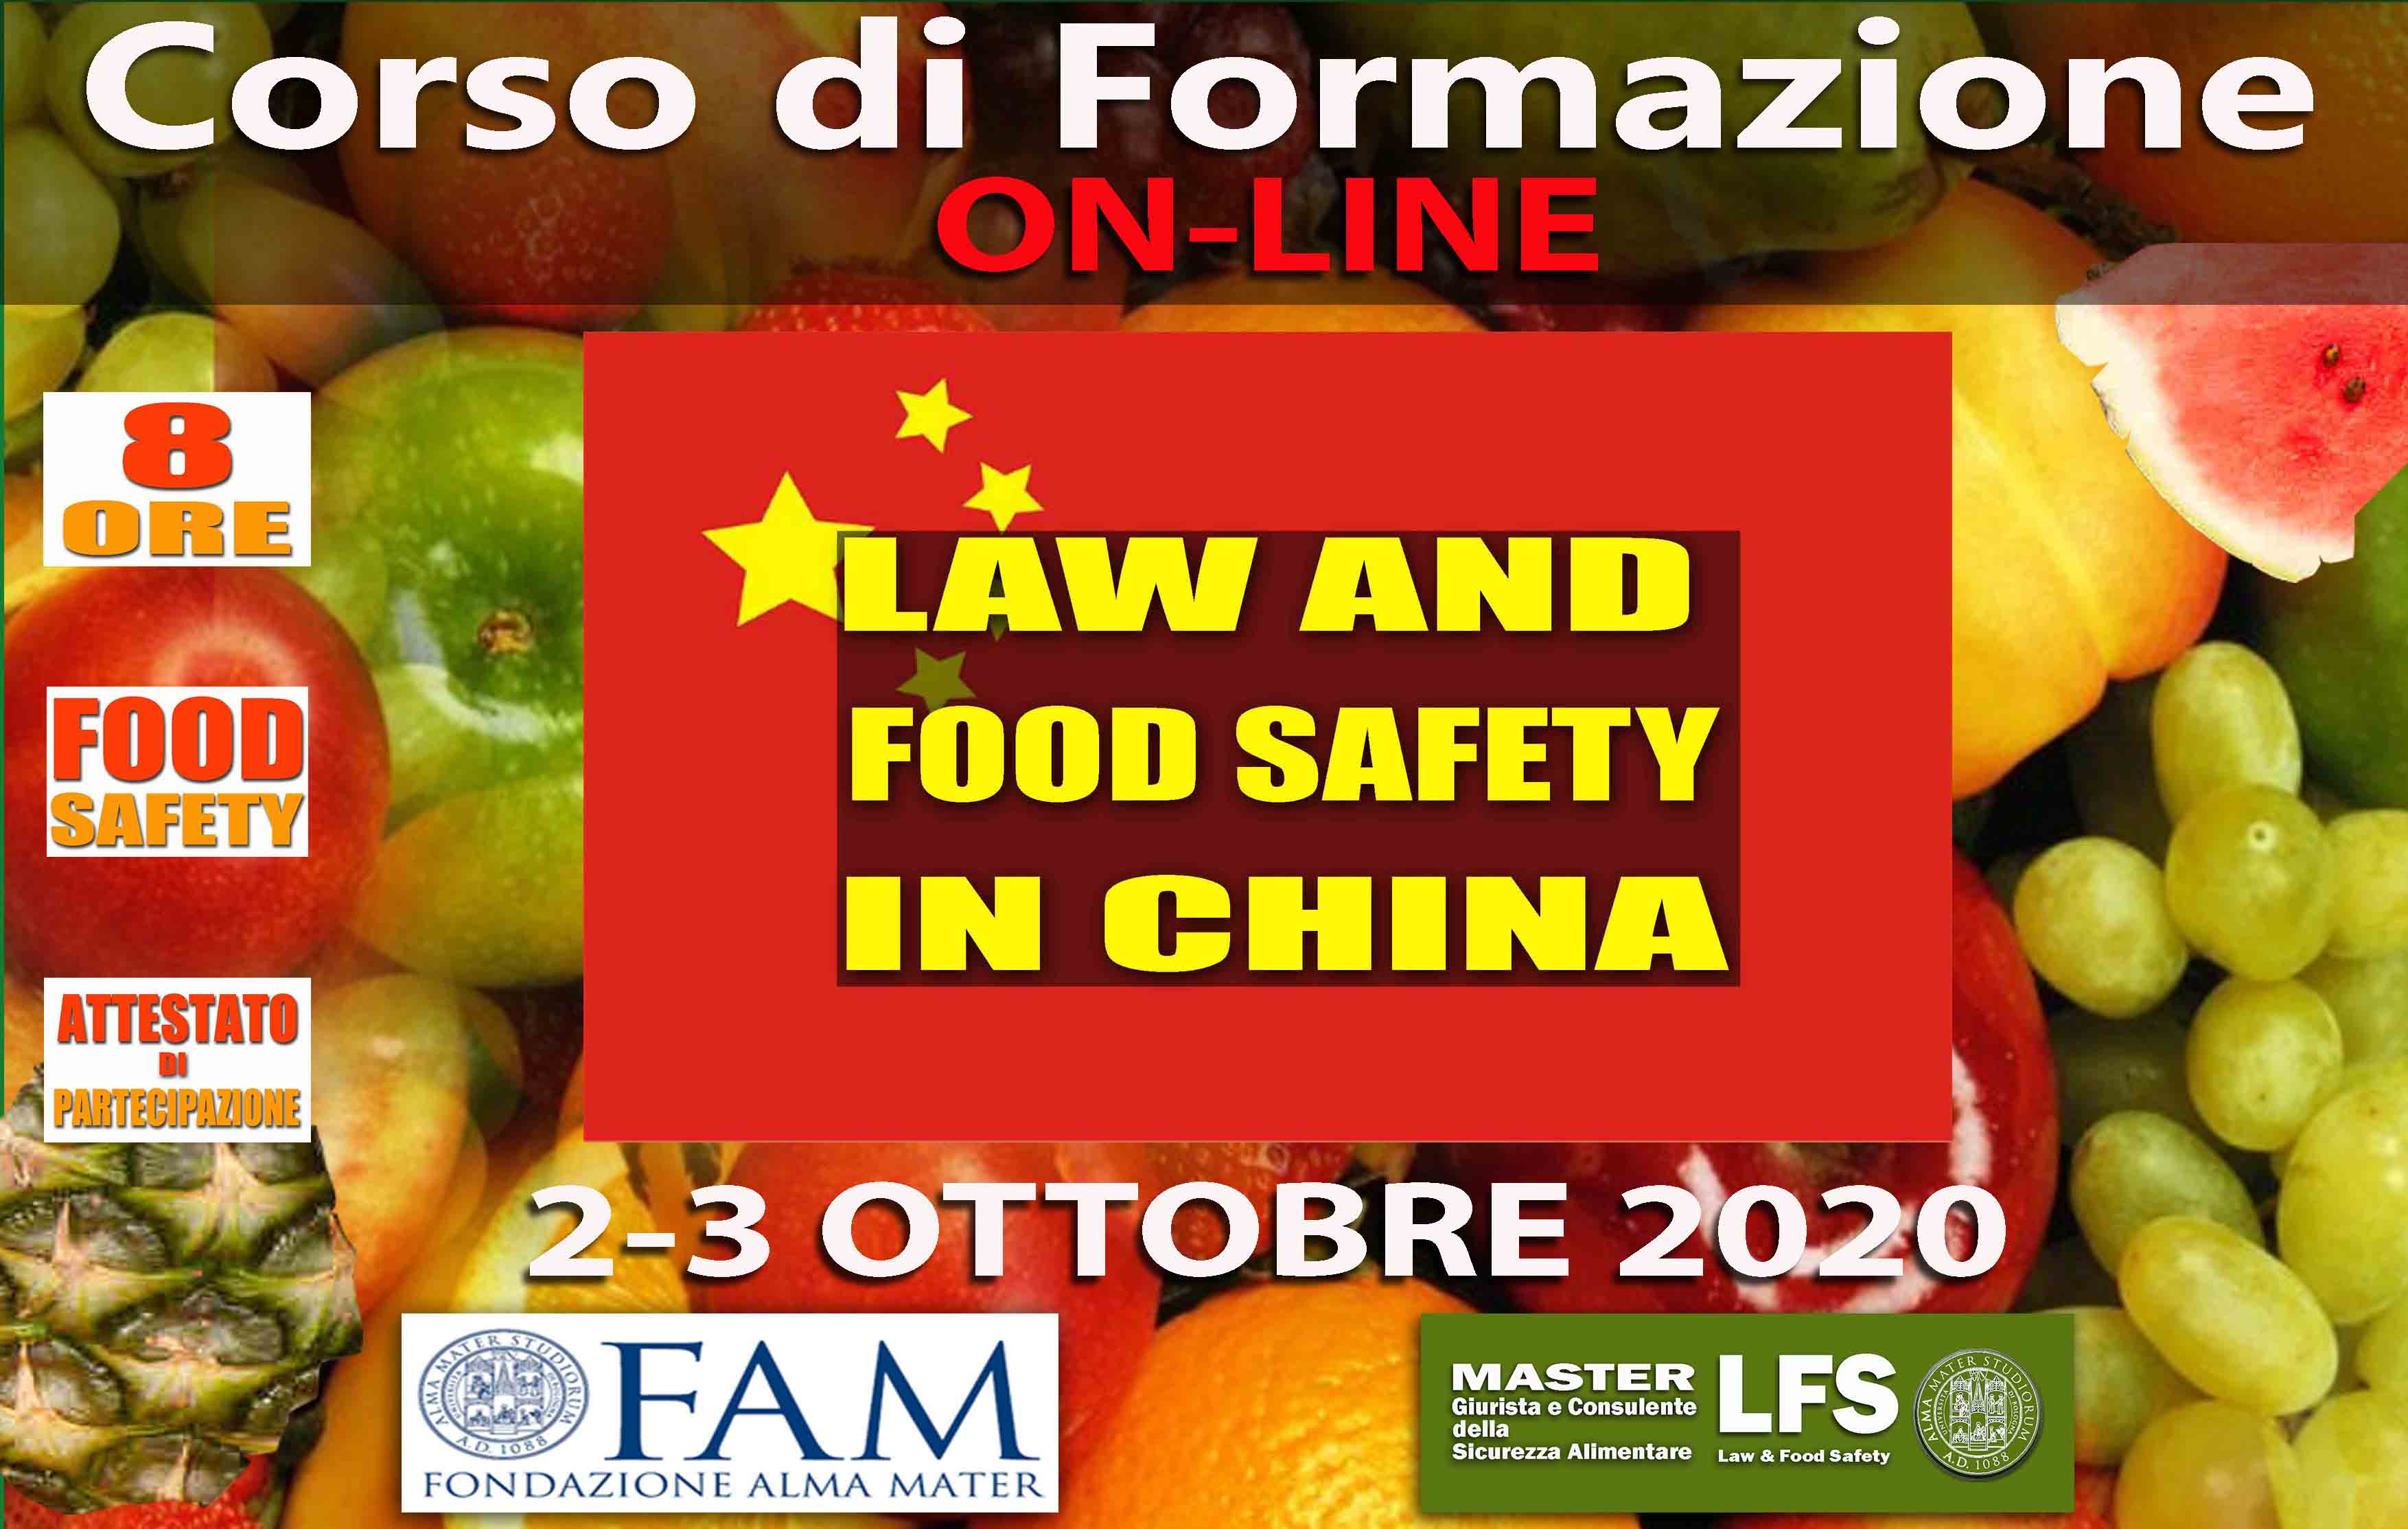 CORSO DI FORMAZIONE LAW AND FOOD SAFETY IN CHINA - 2-3 OTTOBRE 2020